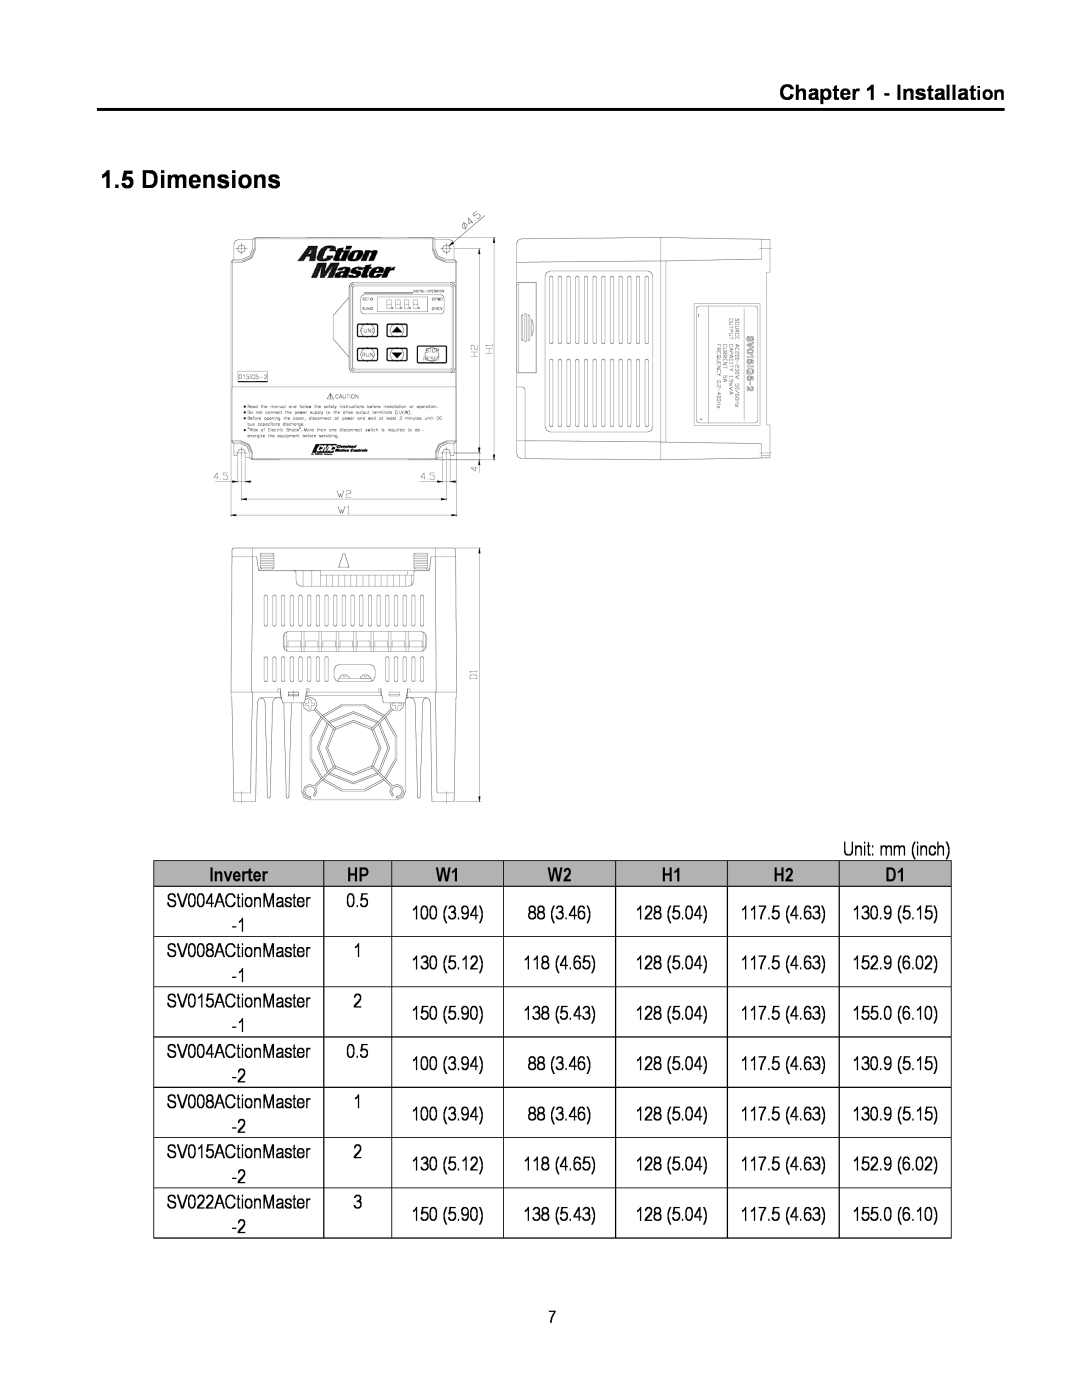 Cleveland Range inverter manual Dimensions, Installation, Inverter 